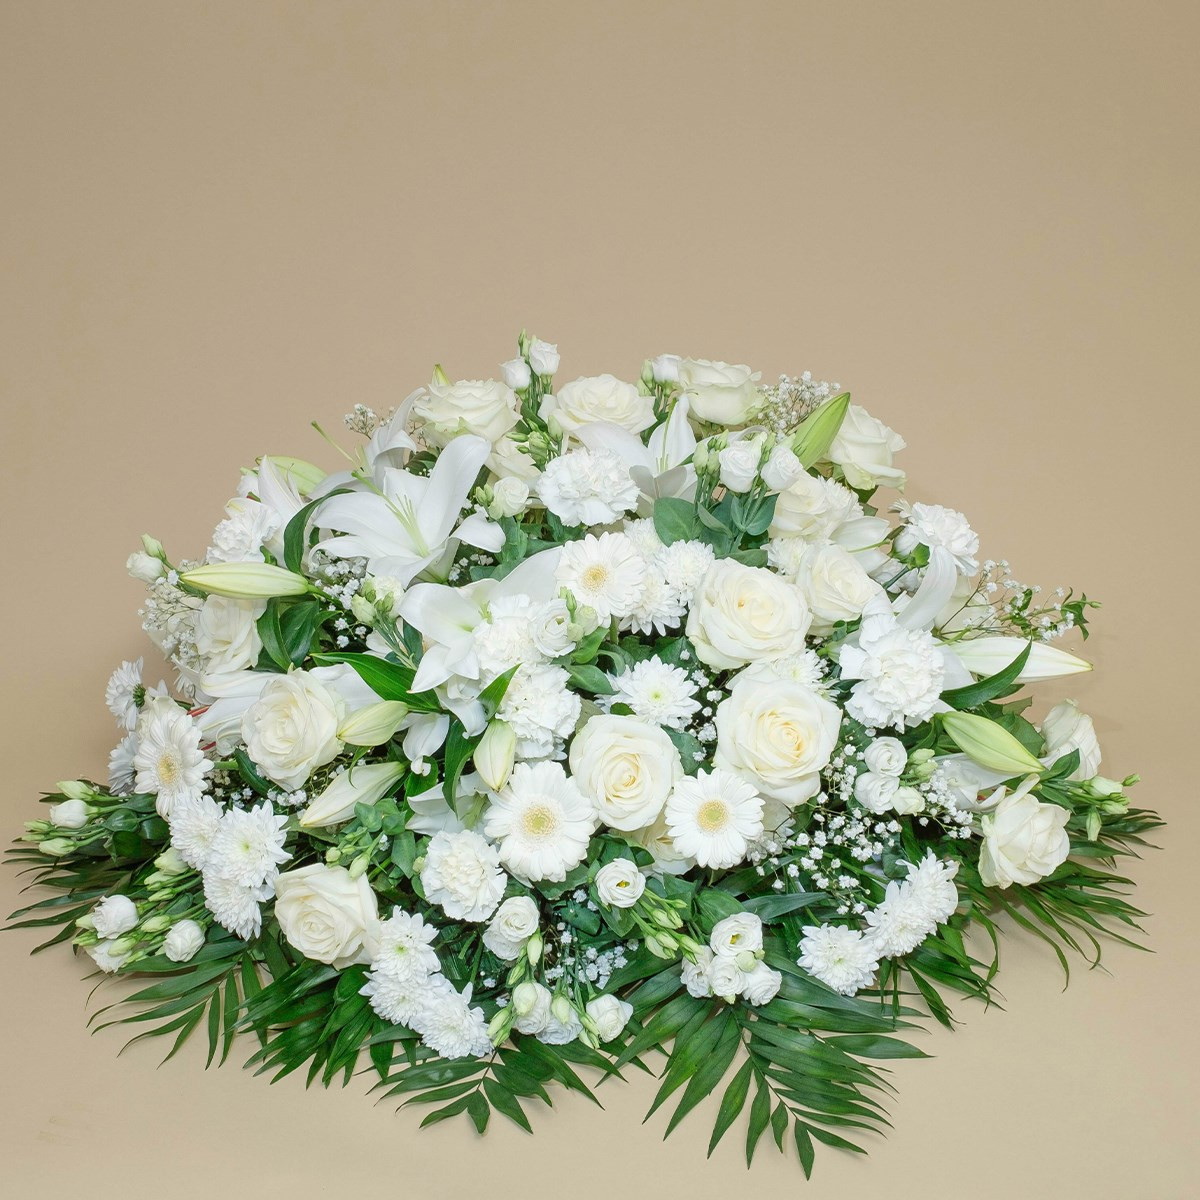 białe kwiaty, wiązanka pogrzebowa, róże i lilie